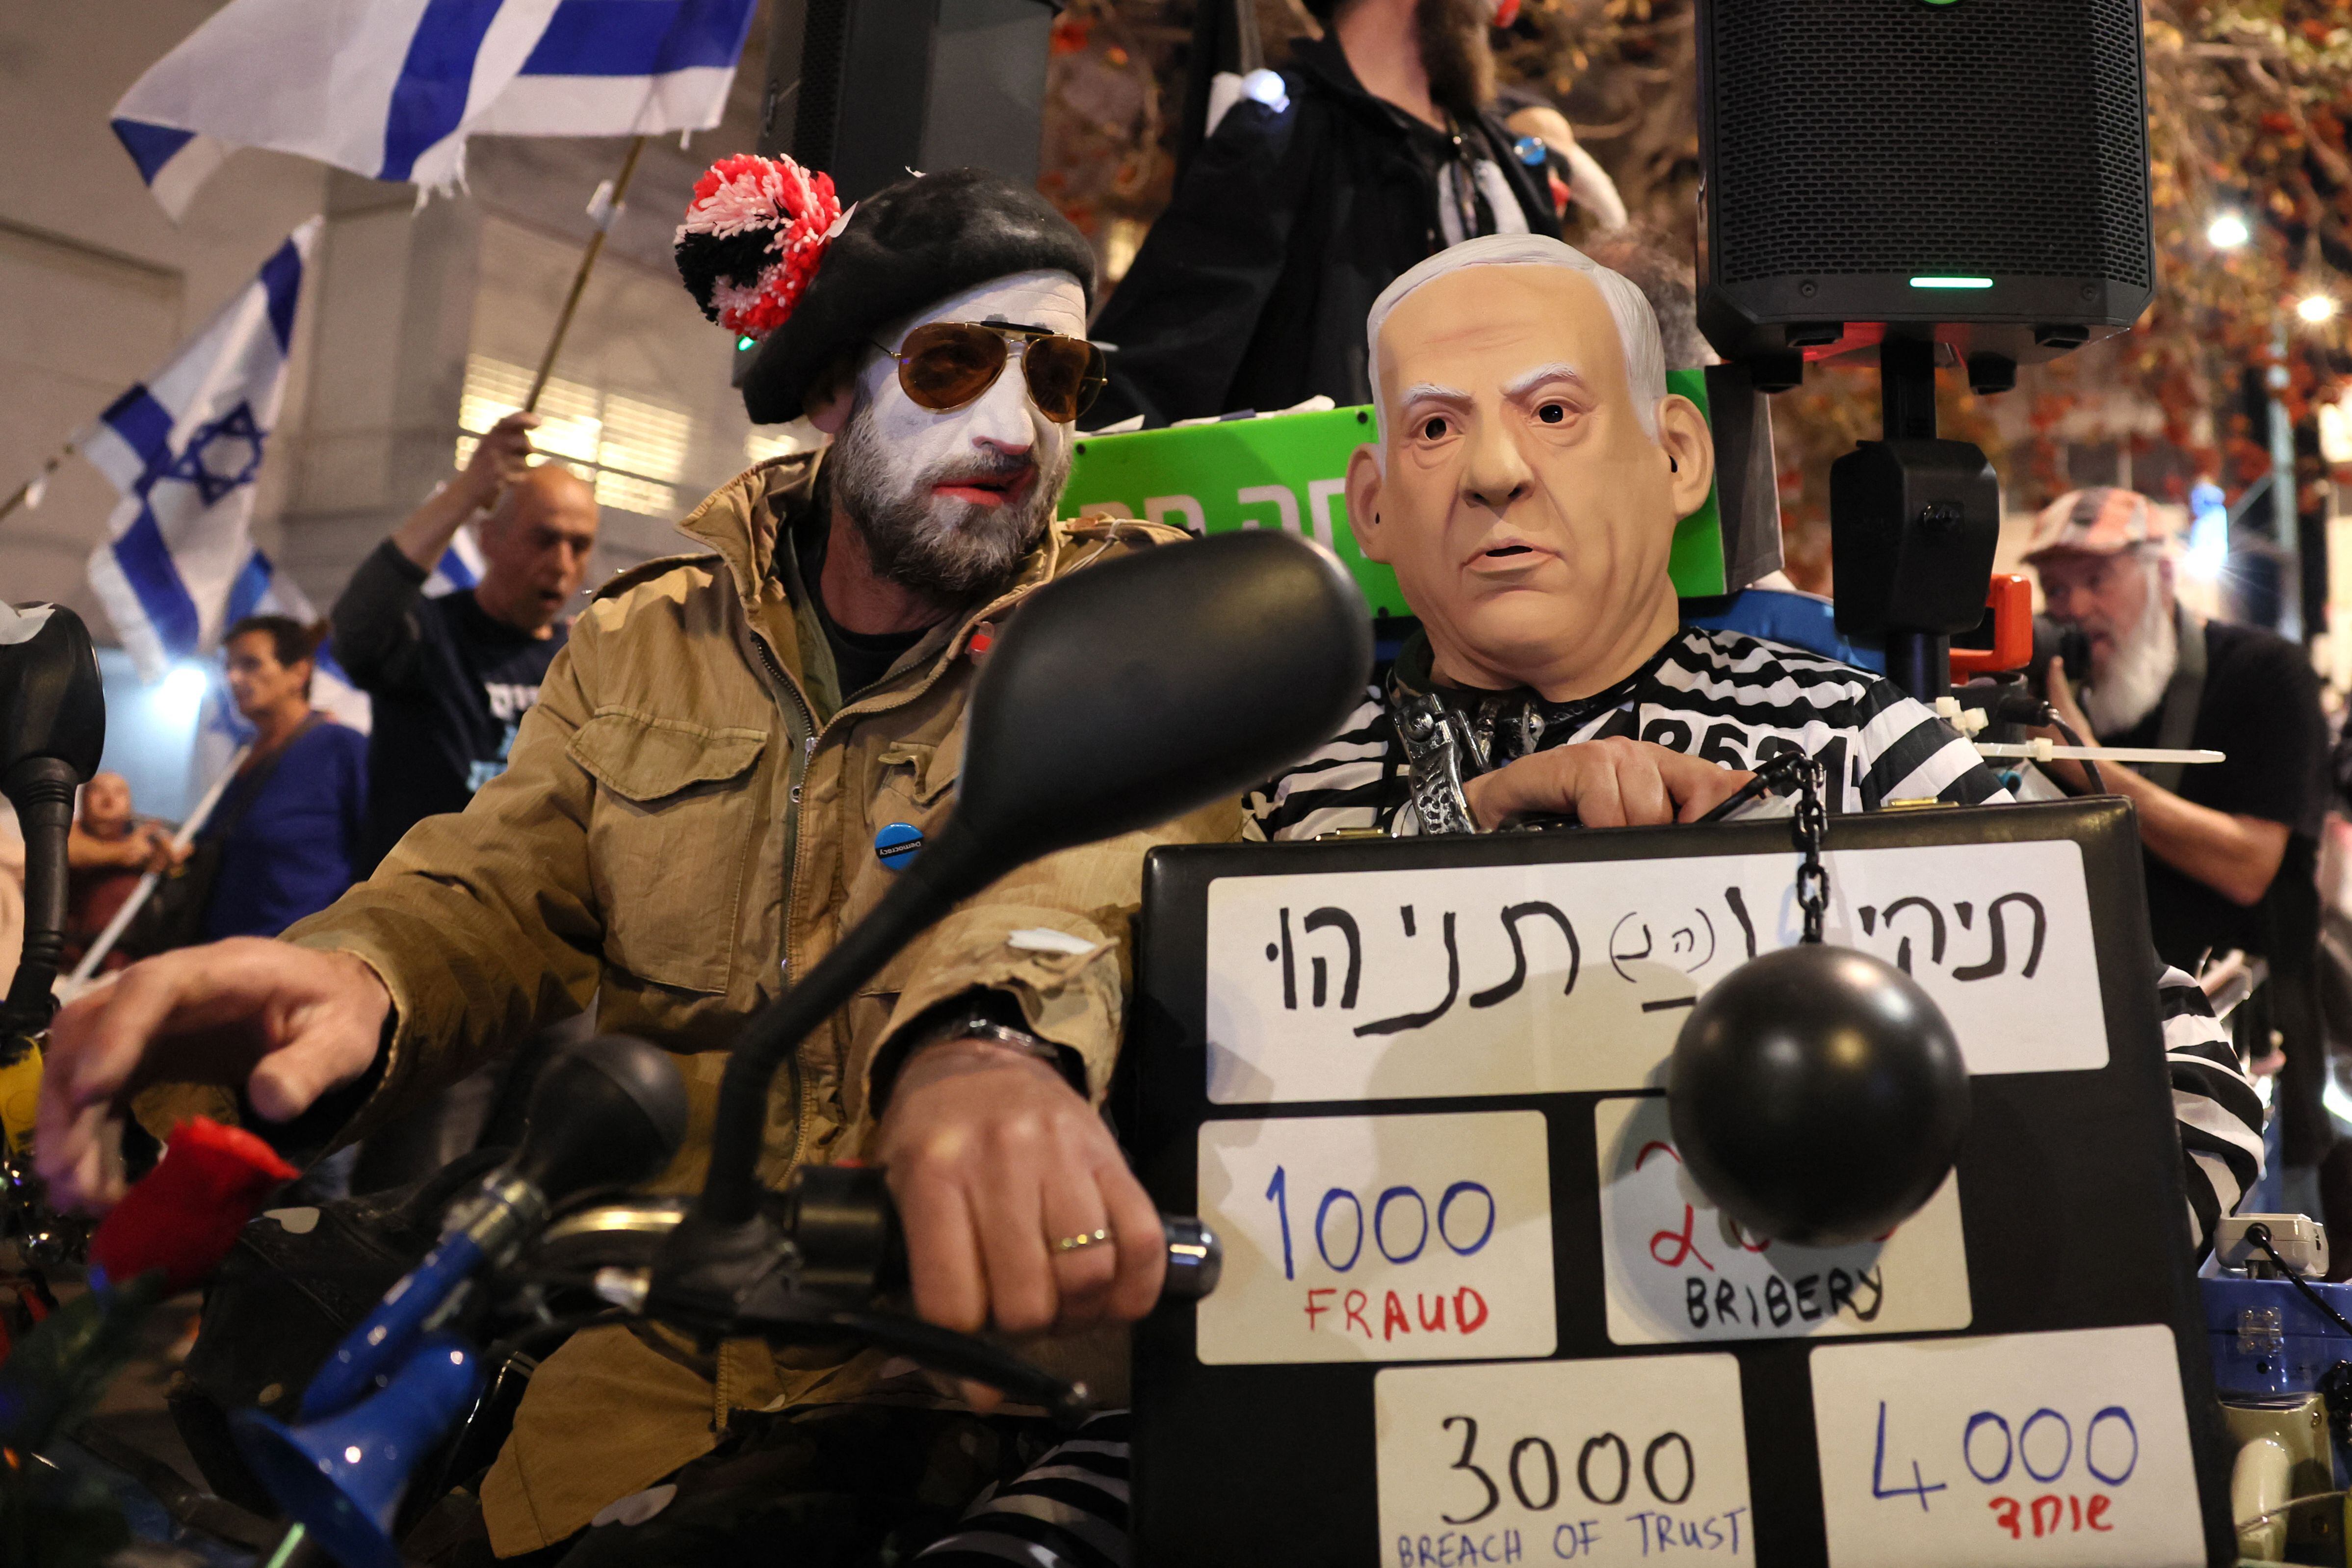 Los manifestantes disfrazados, incluído uno con una máscara que representa al primer ministro de Israel, Benjamin Netanyahu, asisten a una protesta contra el controvertido proyecto de ley de reforma judicial. FOTO: